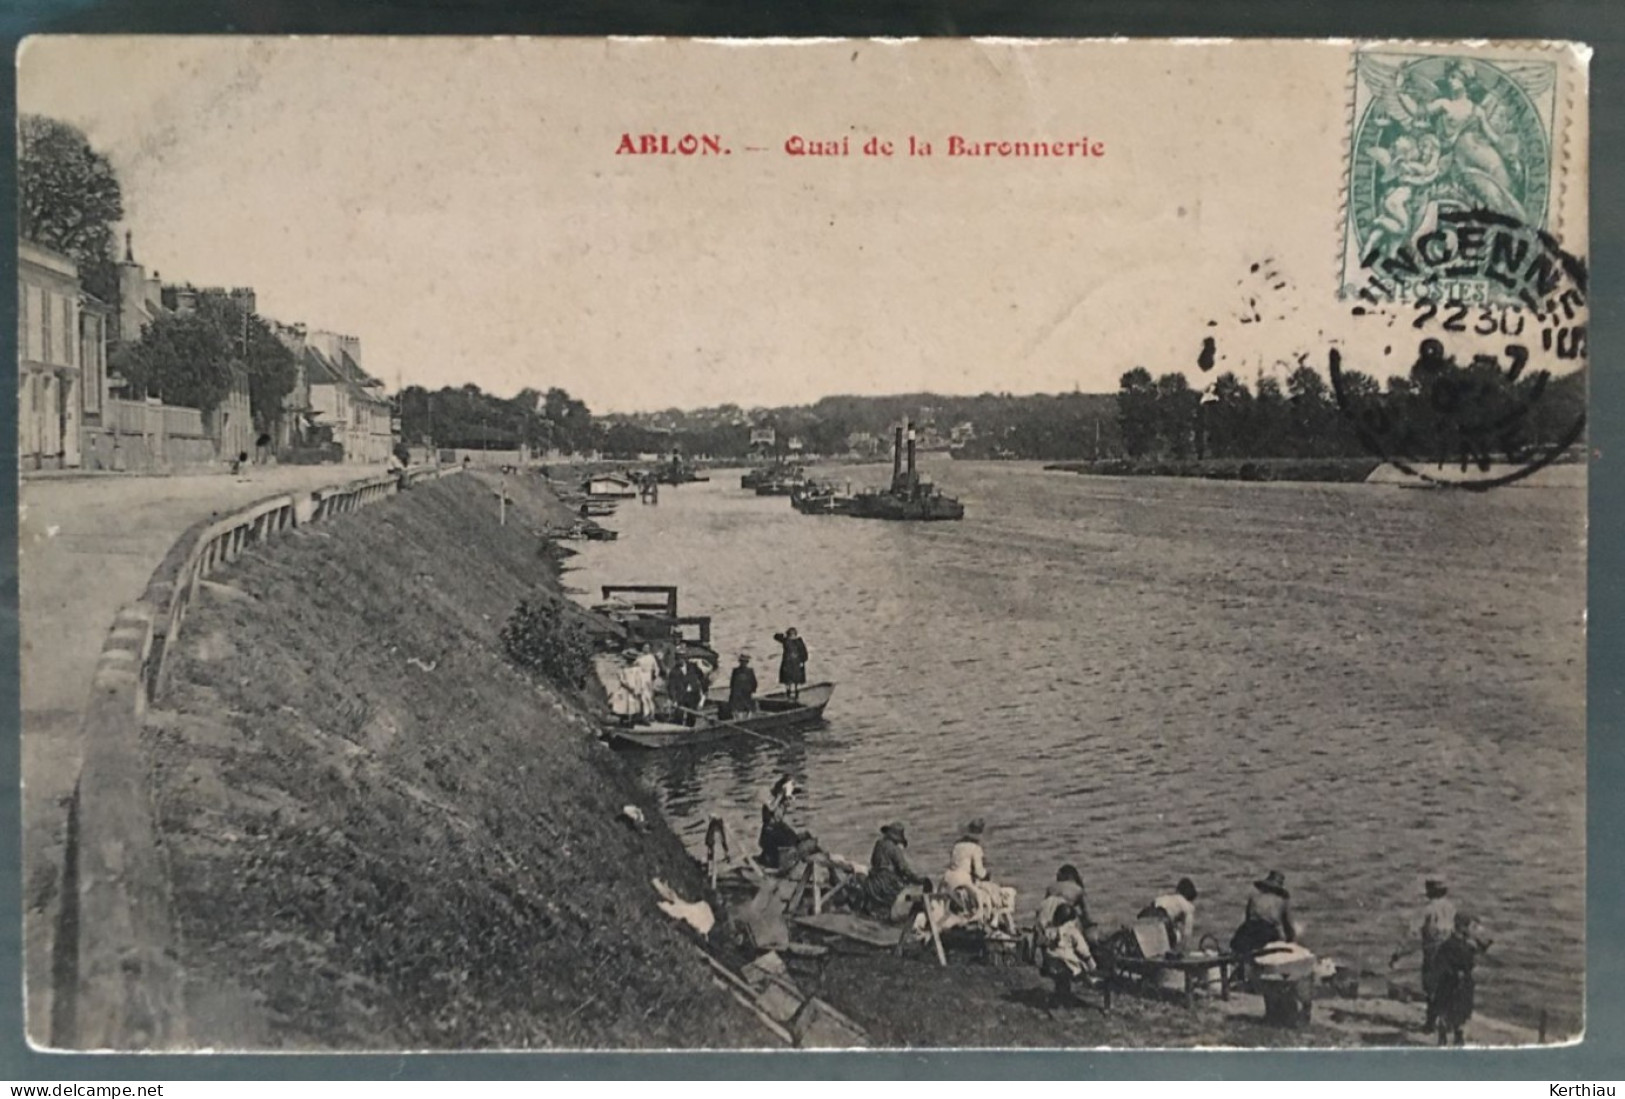 RARE - Ablon - Quai De La Barronnerie. ANIMEE: Lavandières Sur Les Berges, Personnes En Barques. Circulée 1902 Ou 1907 - Ablon Sur Seine